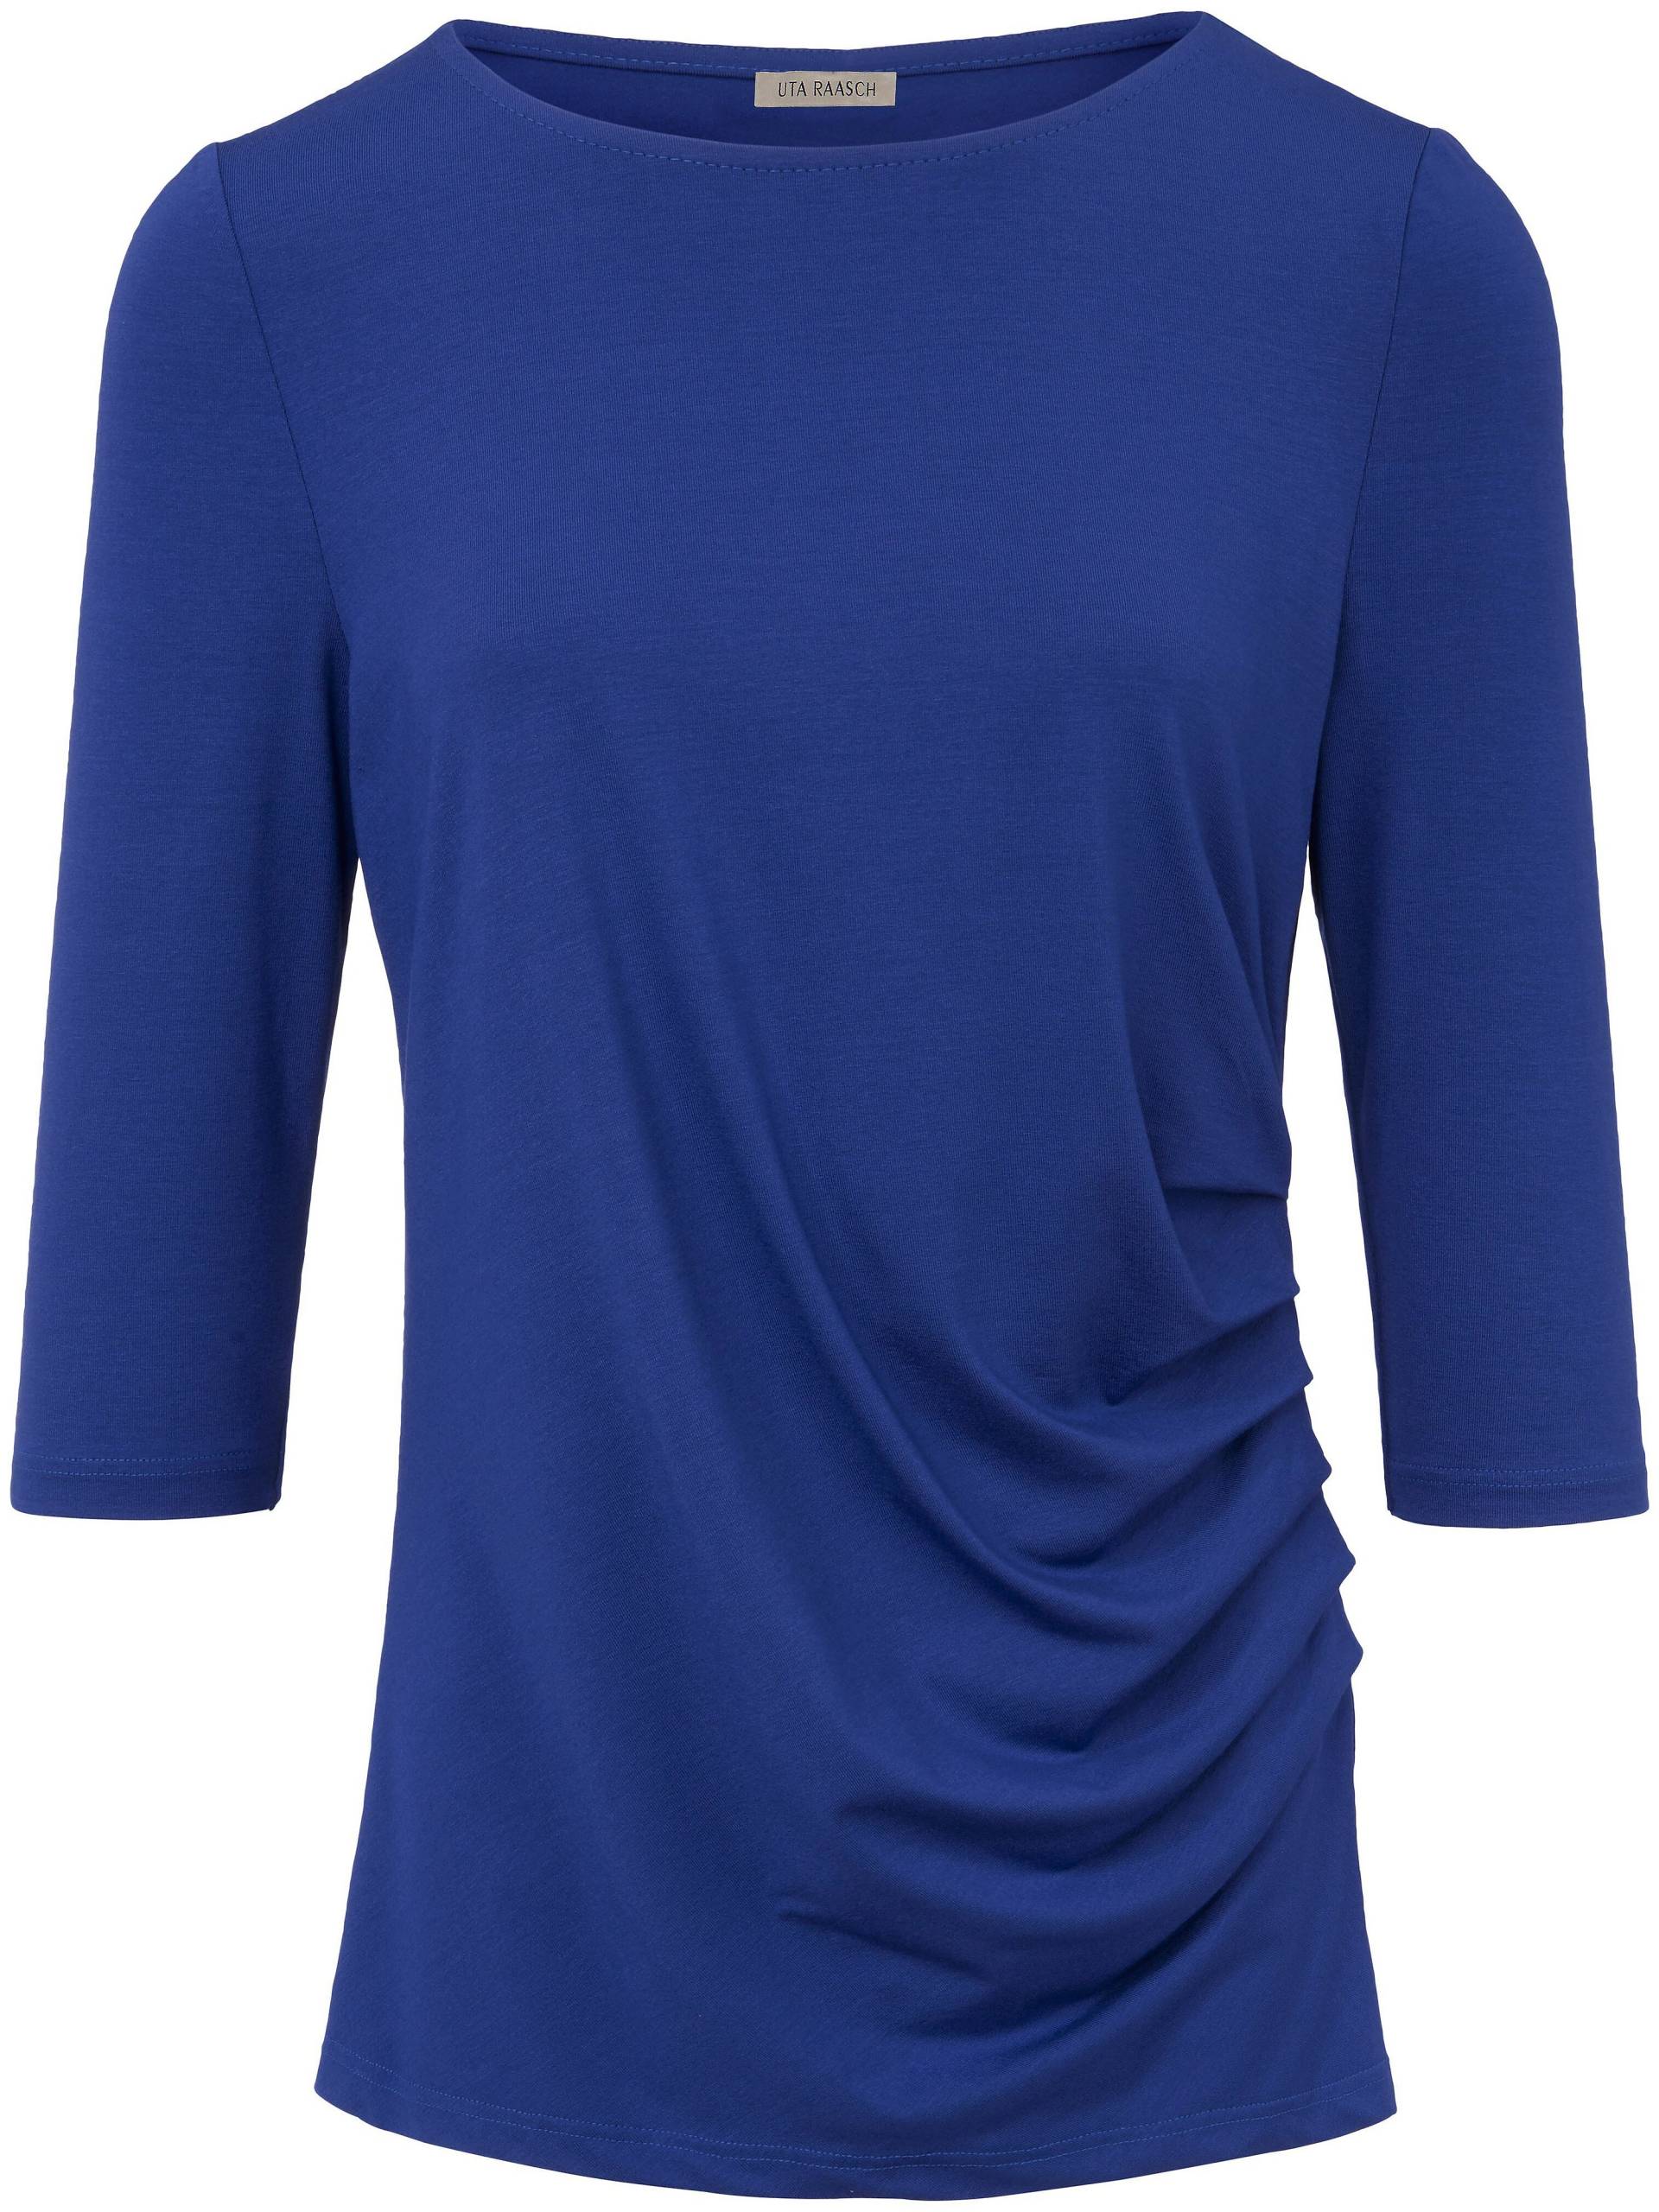 Rundhals-Shirt 3/4-Arm Uta Raasch blau Größe: 42 von Uta Raasch